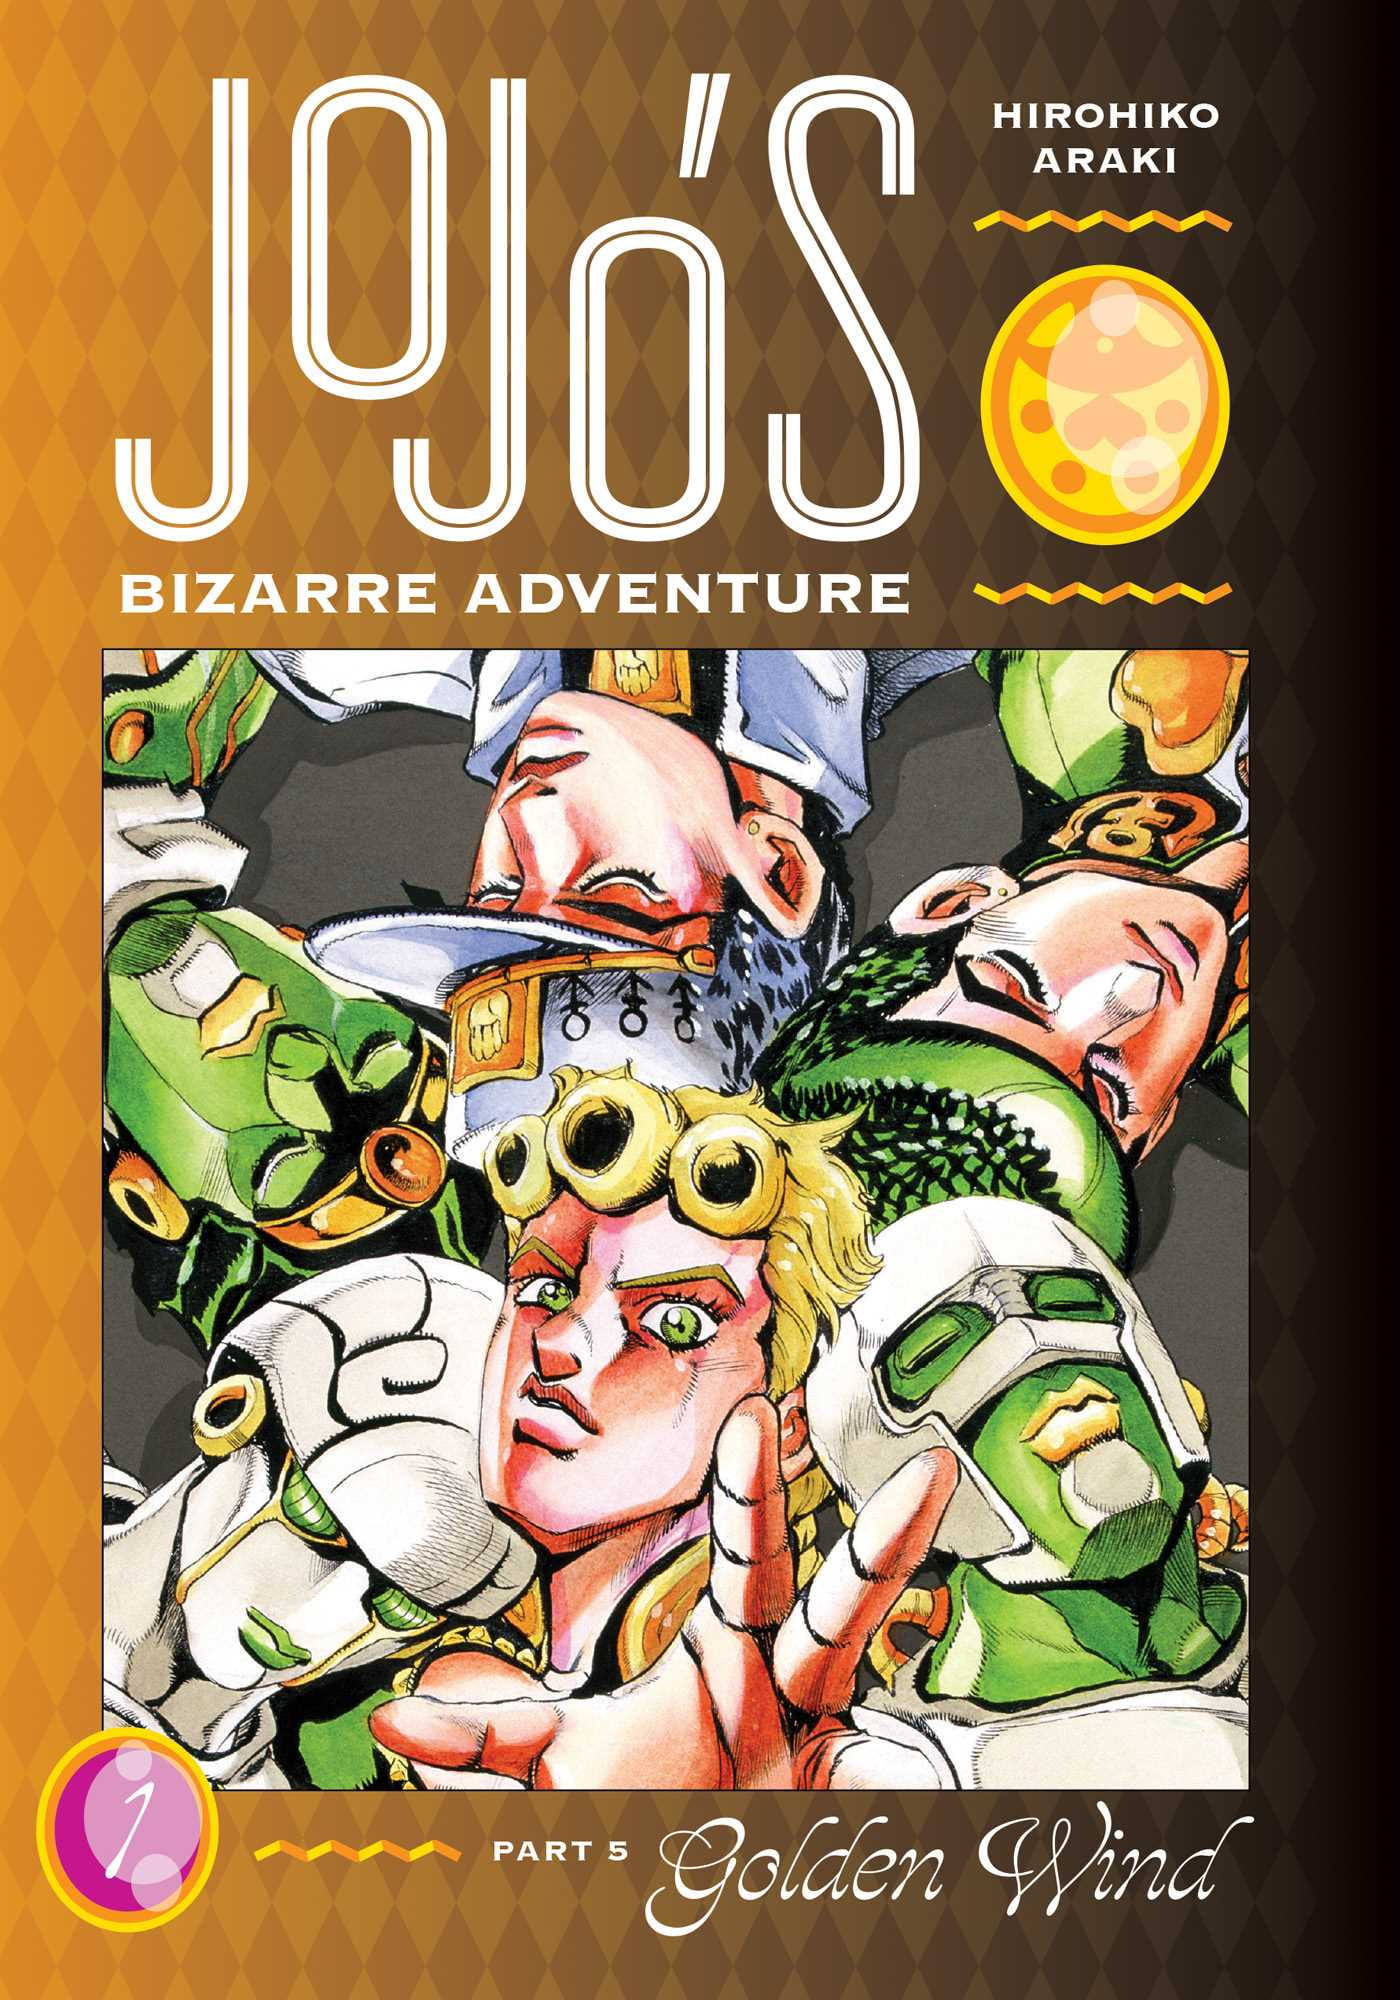 JoJo's Bizarre Adventure Part 5 Golden Wind Acrylic Stands – Shonen Crunch